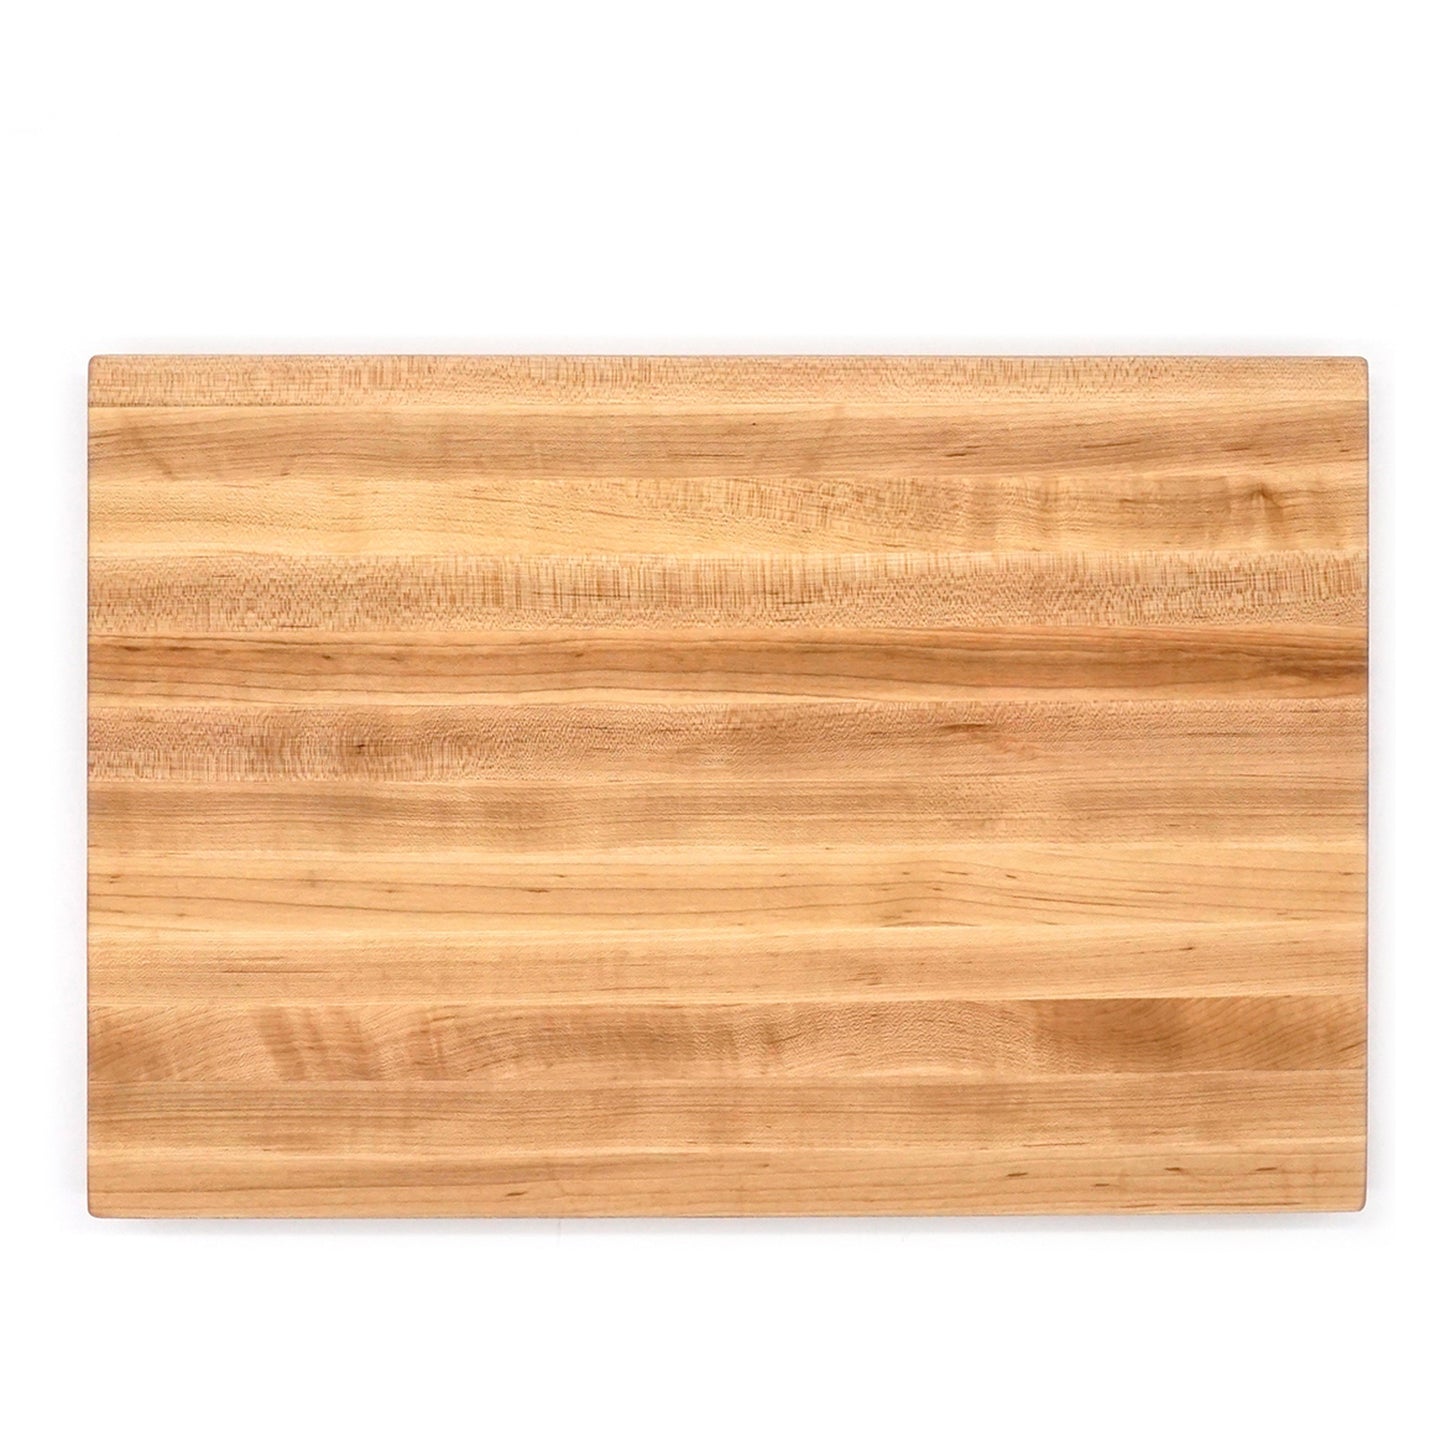 Professional Edge Grain Maple Board-18" x 12"